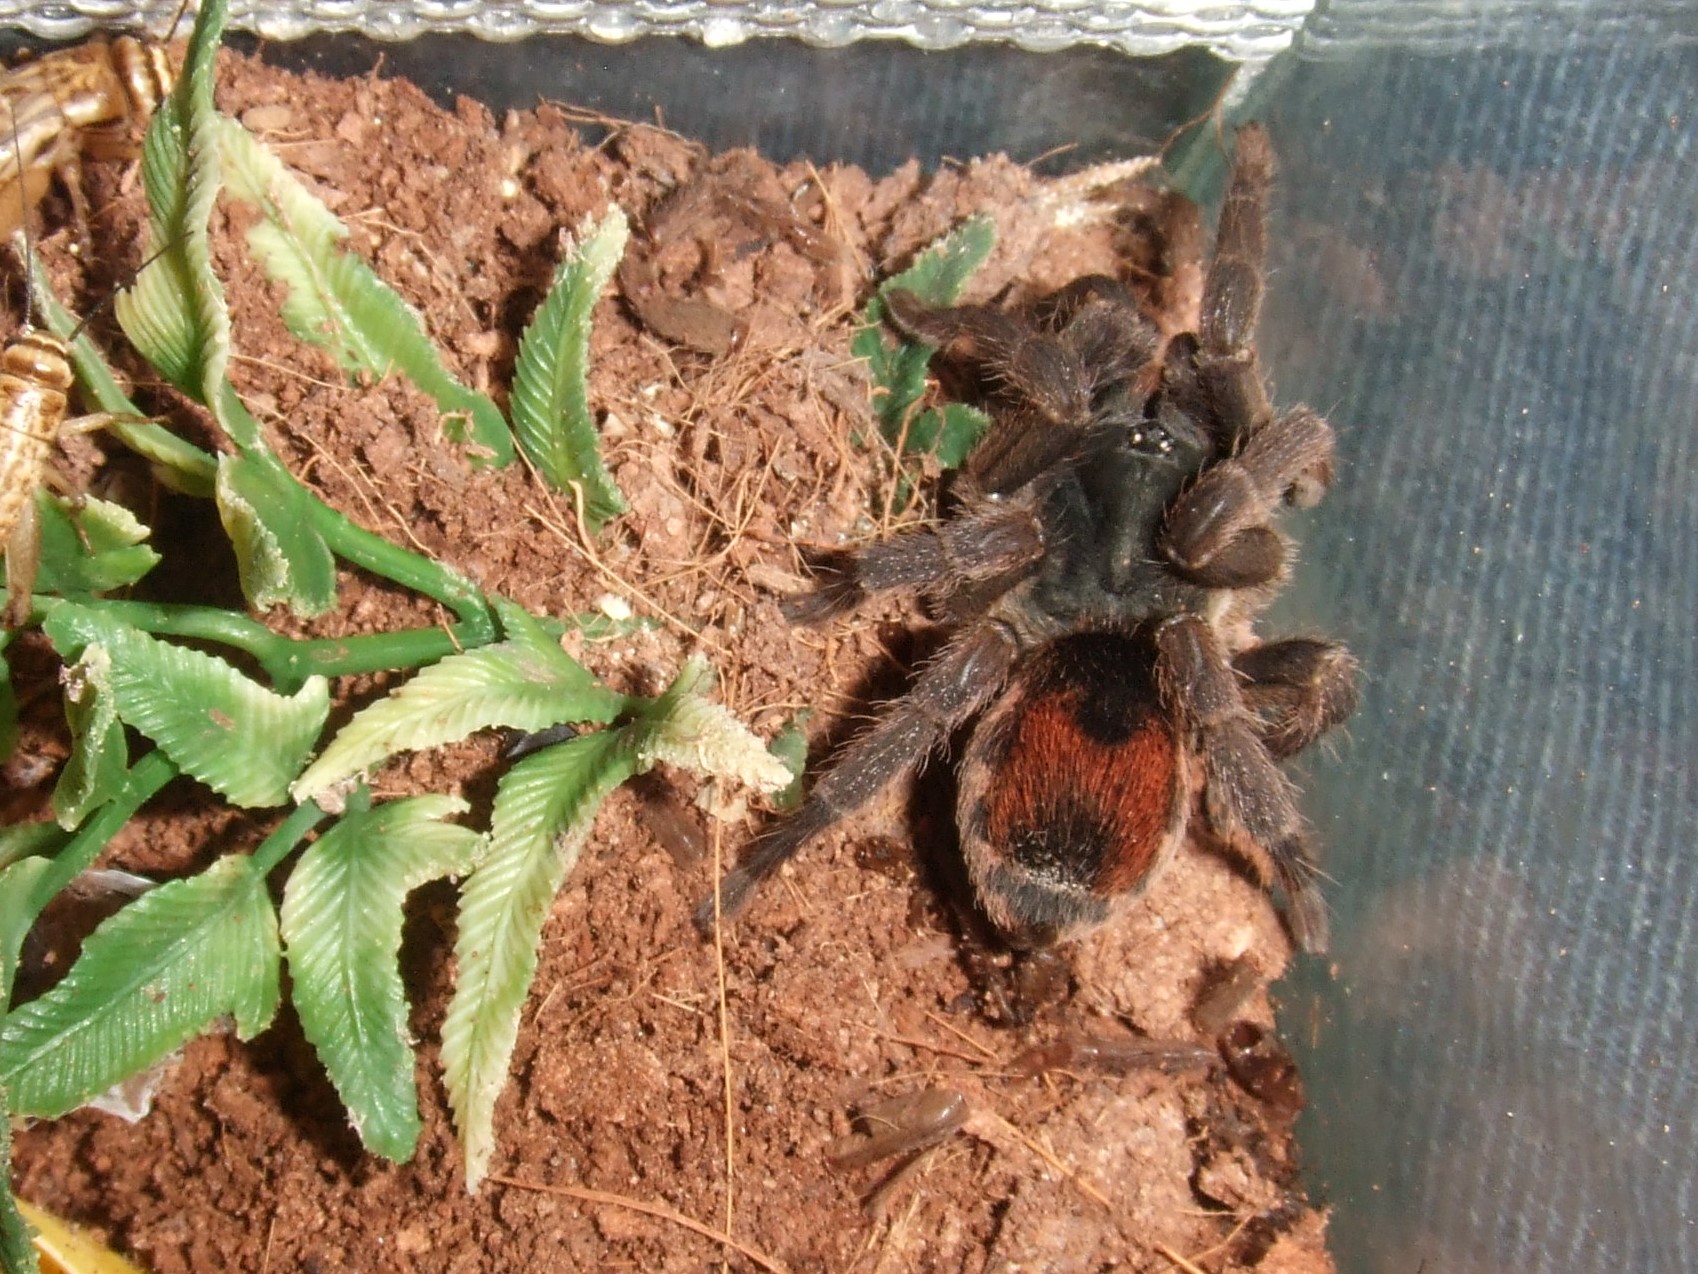 Neostenotarsus sp. Suriname - Moengo